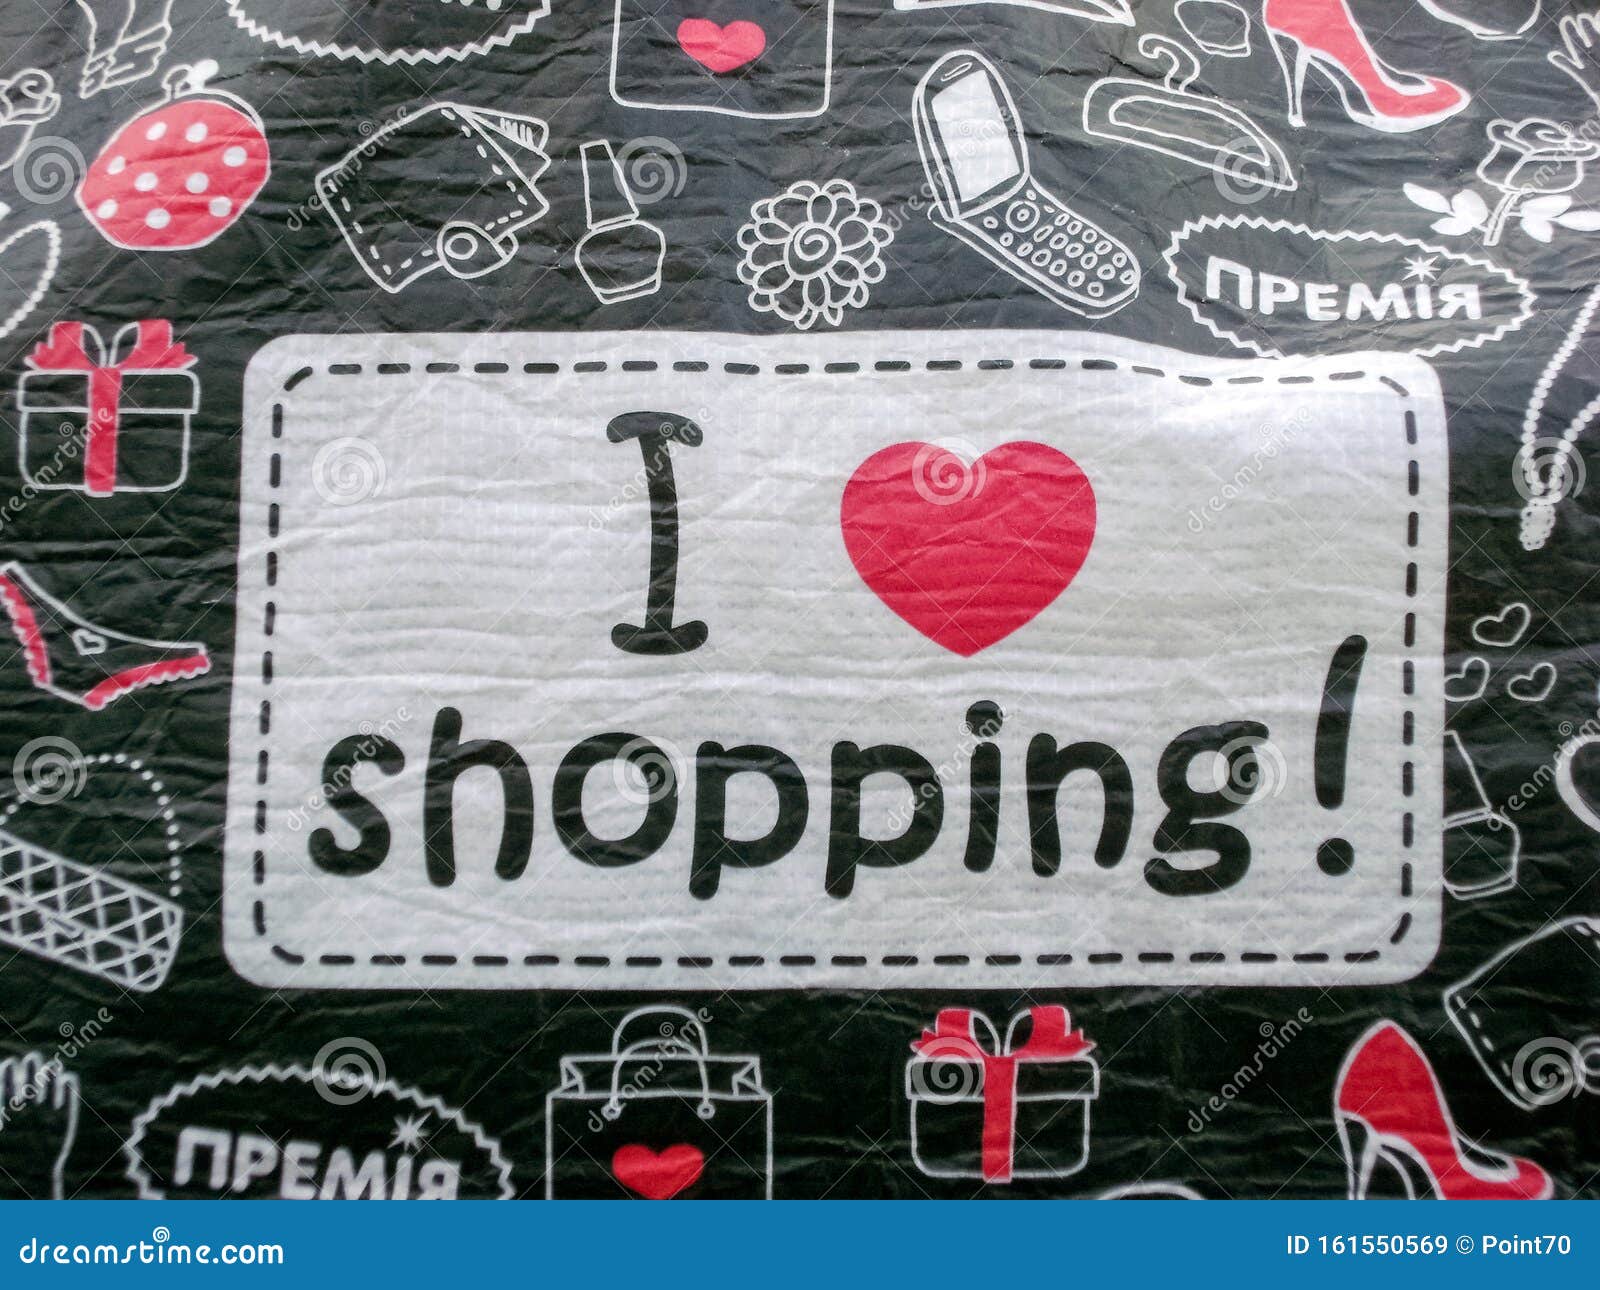 One love shop. Я люблю шоппинг картинка. Love is шоппинг. Shopping is my Cardio надпись. Фото l Love you shopping надпись.